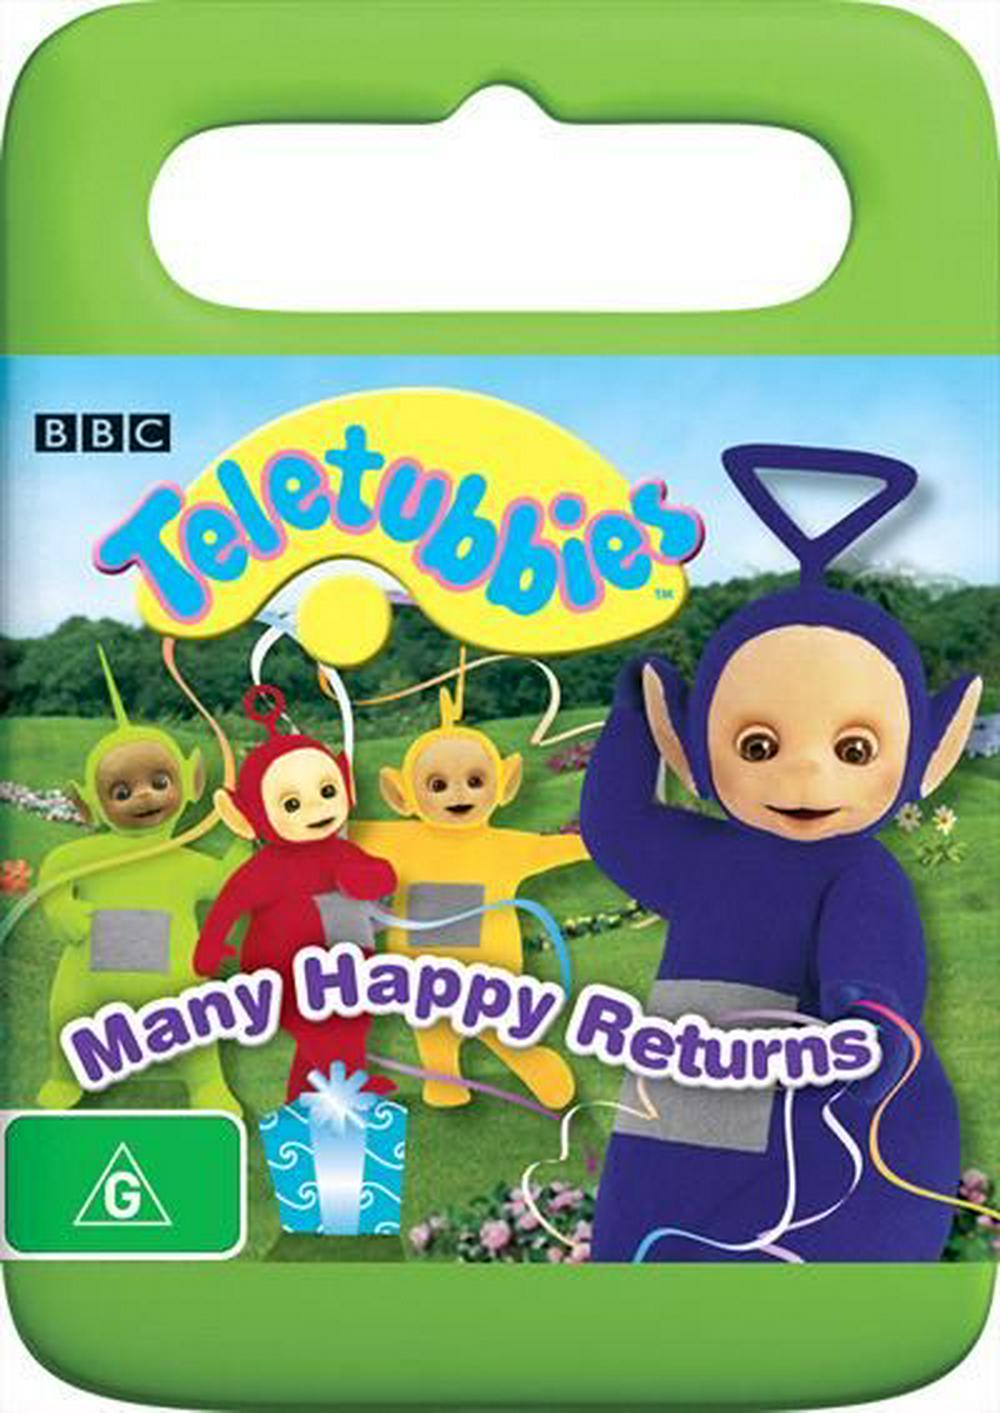 Many Happy Returns | ABC For Kids Wiki | Fandom